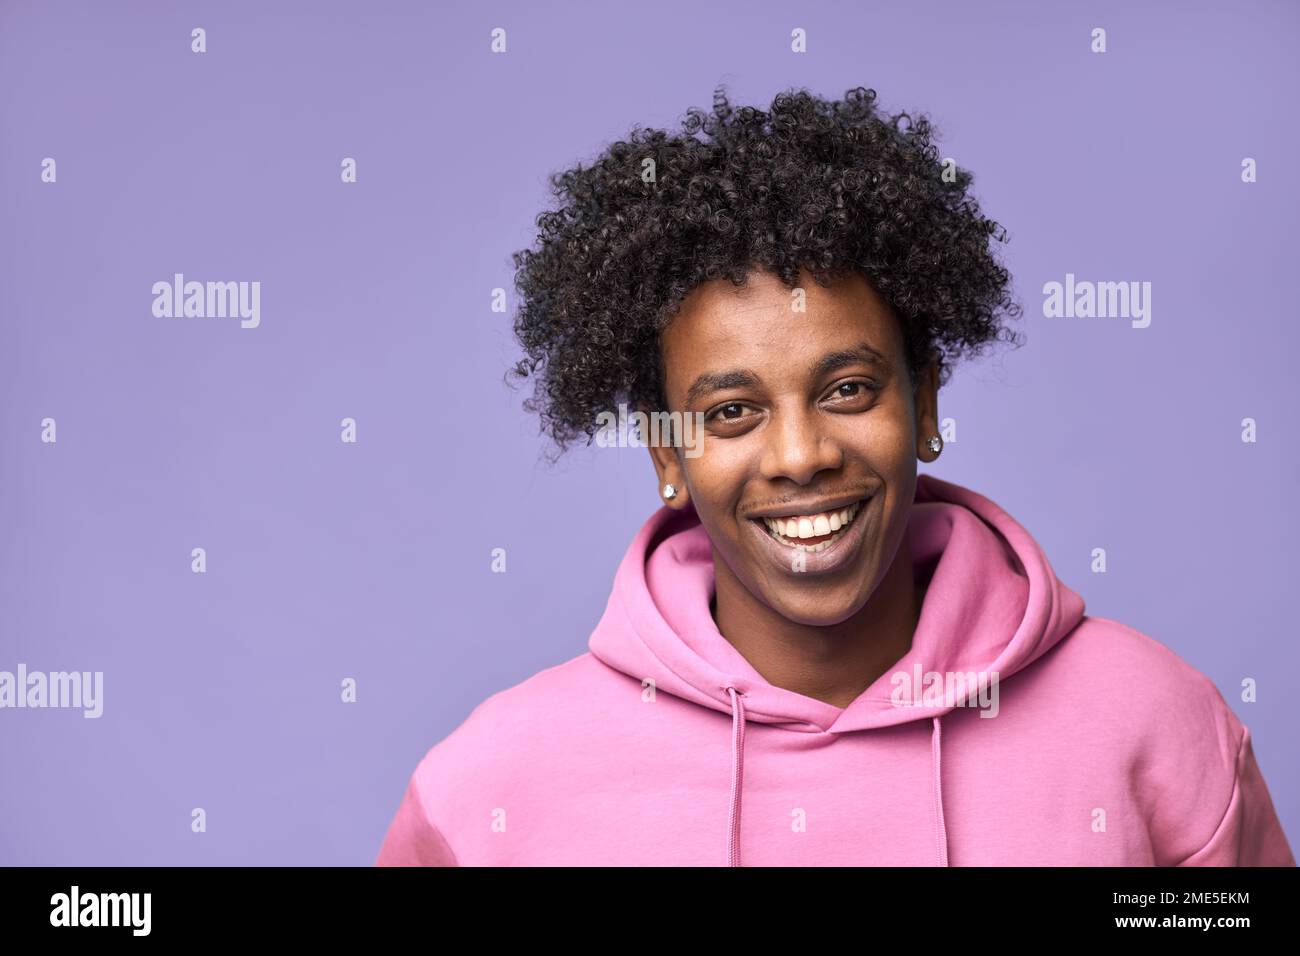 Ragazzo afro-americano sorridente che indossa felpa con cappuccio rosa isolato sul viola. Foto Stock